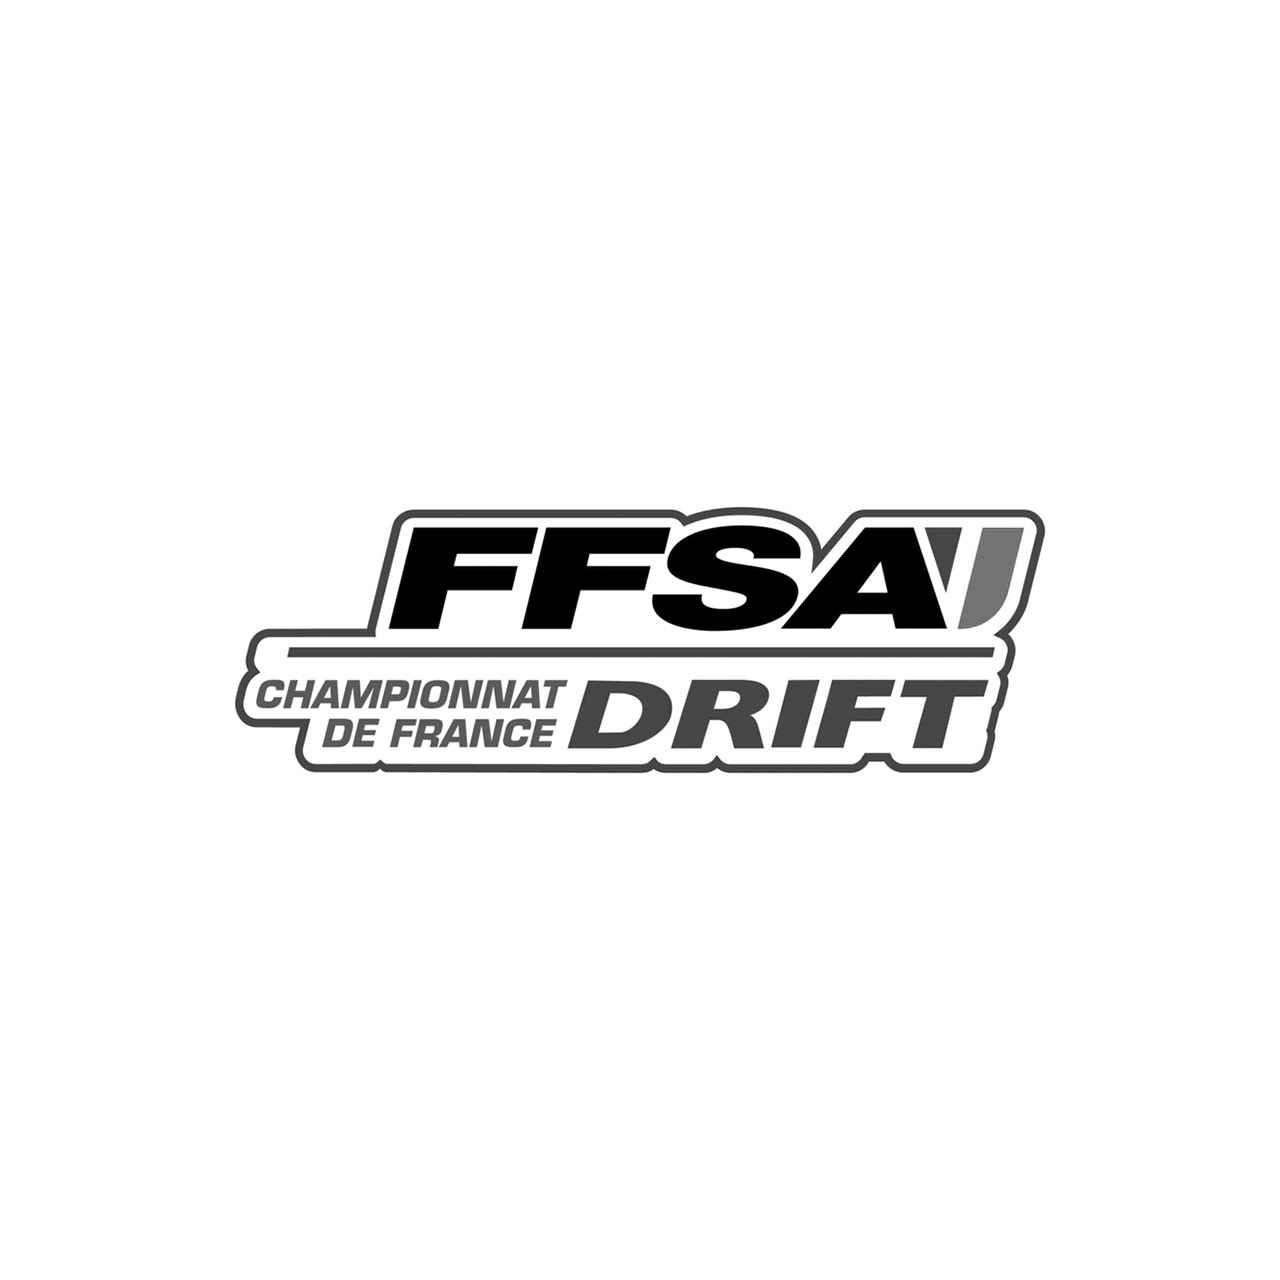 Drift Logo - Ffsa Championnat France Drift Logo Vinyl Decal